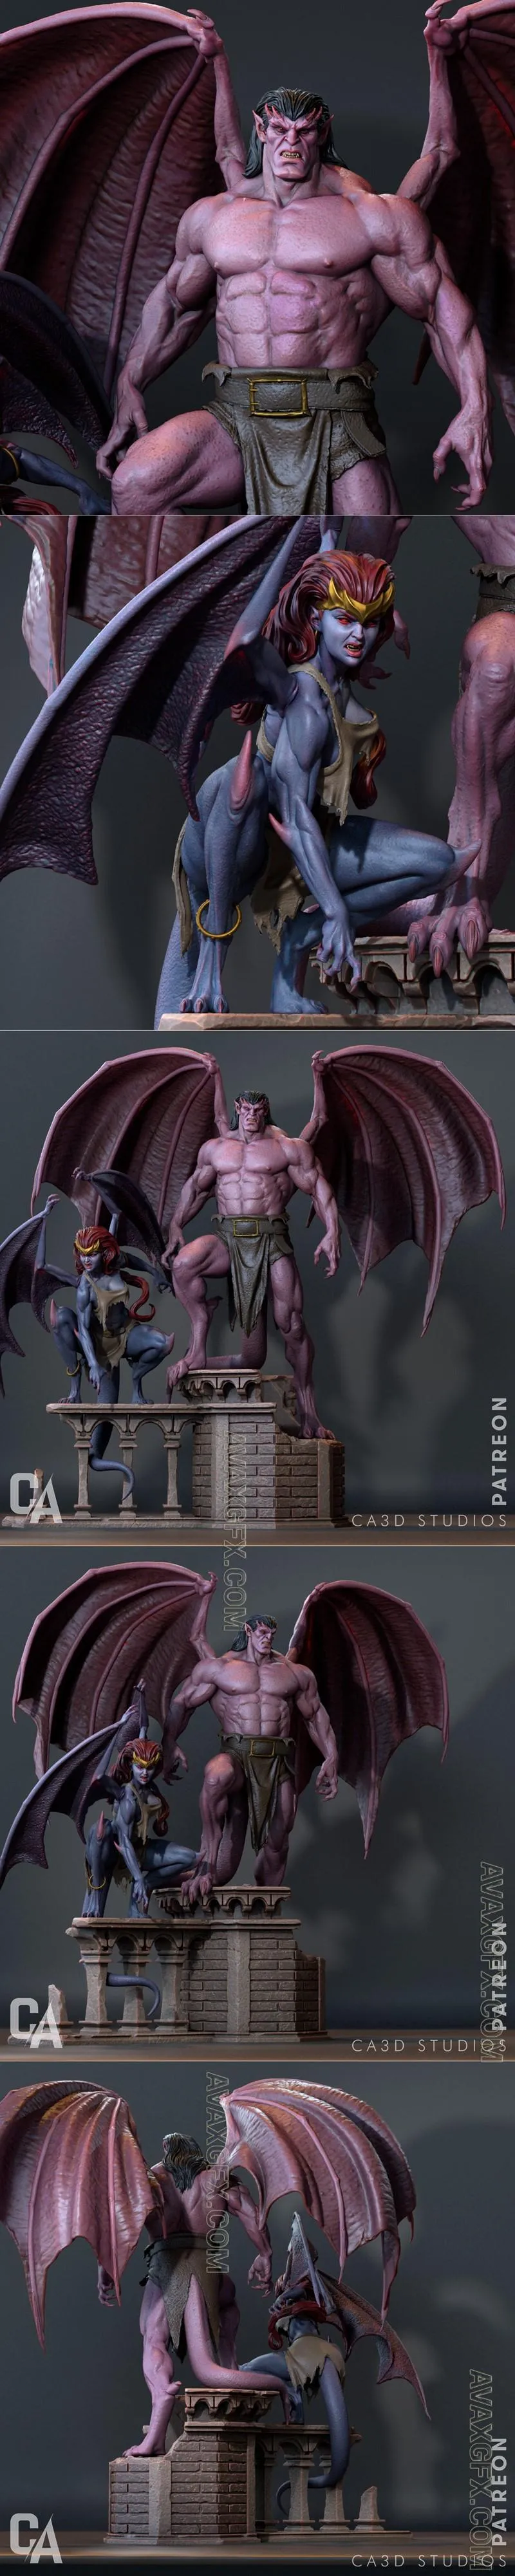 Ca 3d Studios - Demona and Goliath - STL 3D Model